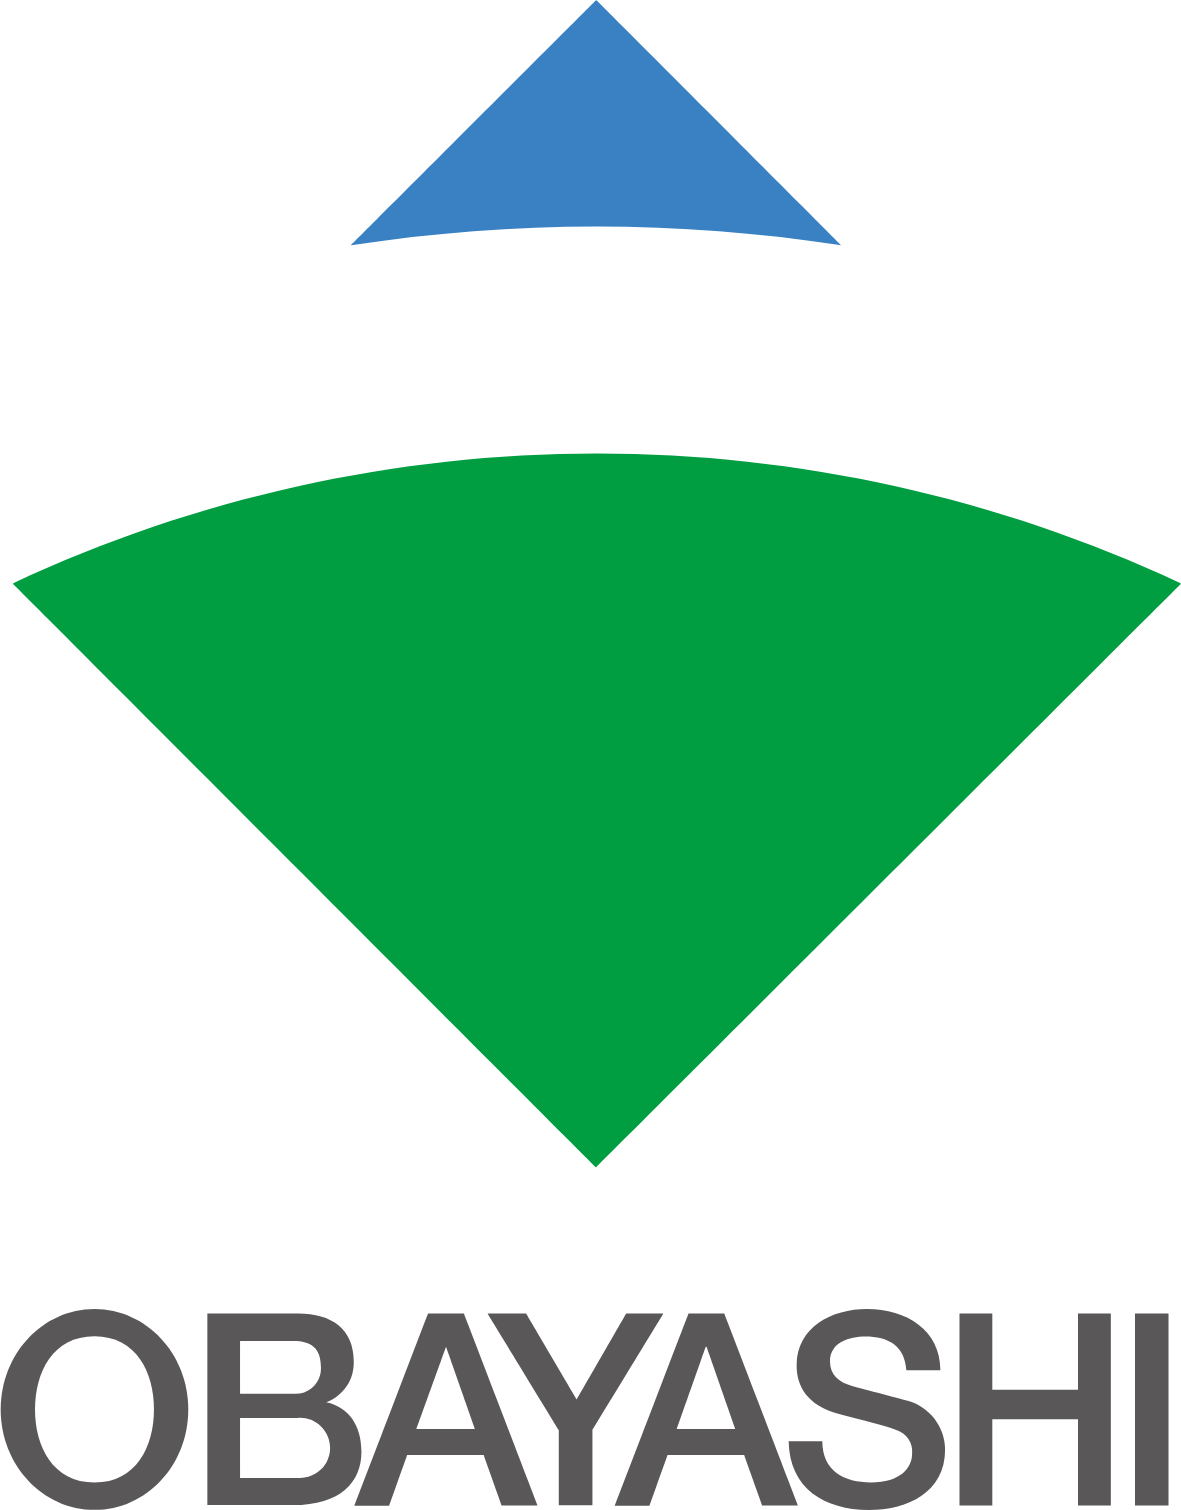 Obayashi logo large (transparent PNG)